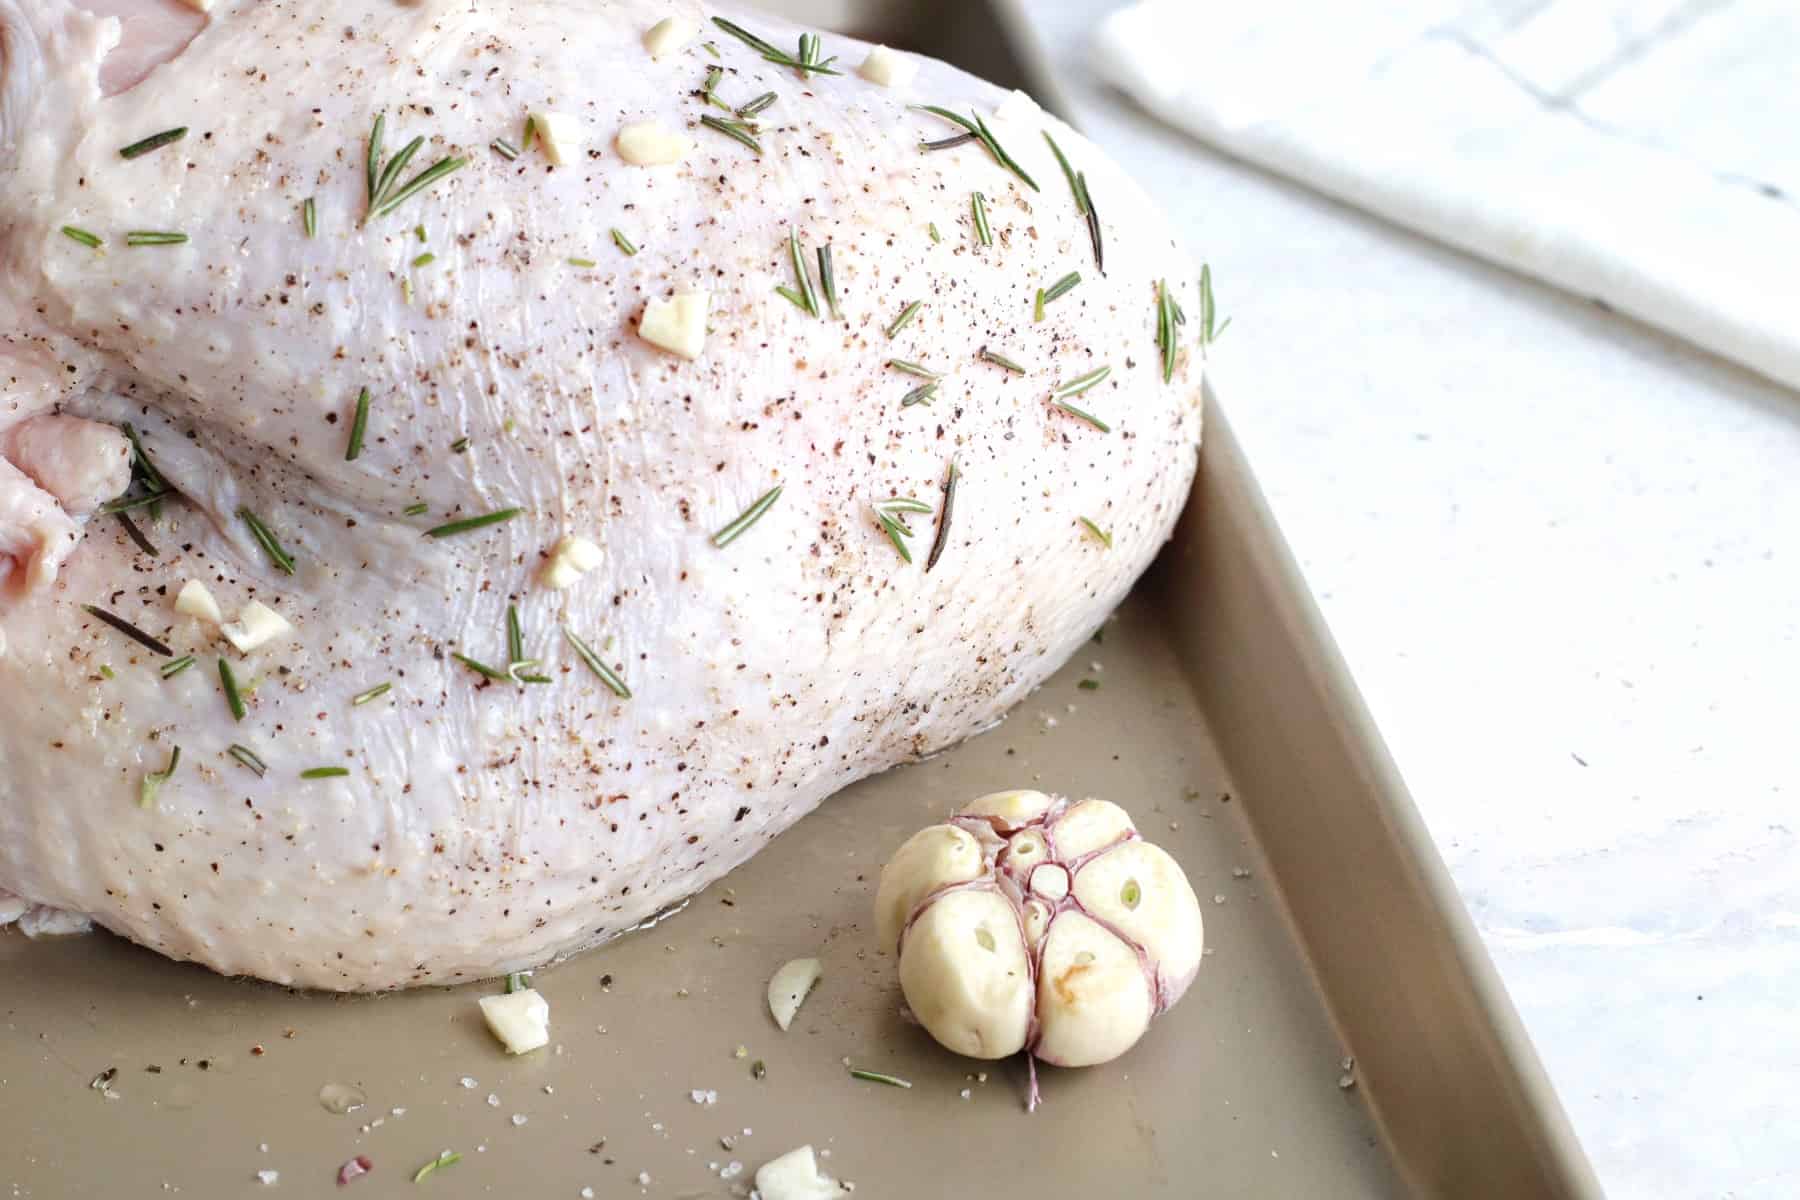 Raw turkey breast on a baking sheet with a head of garlic